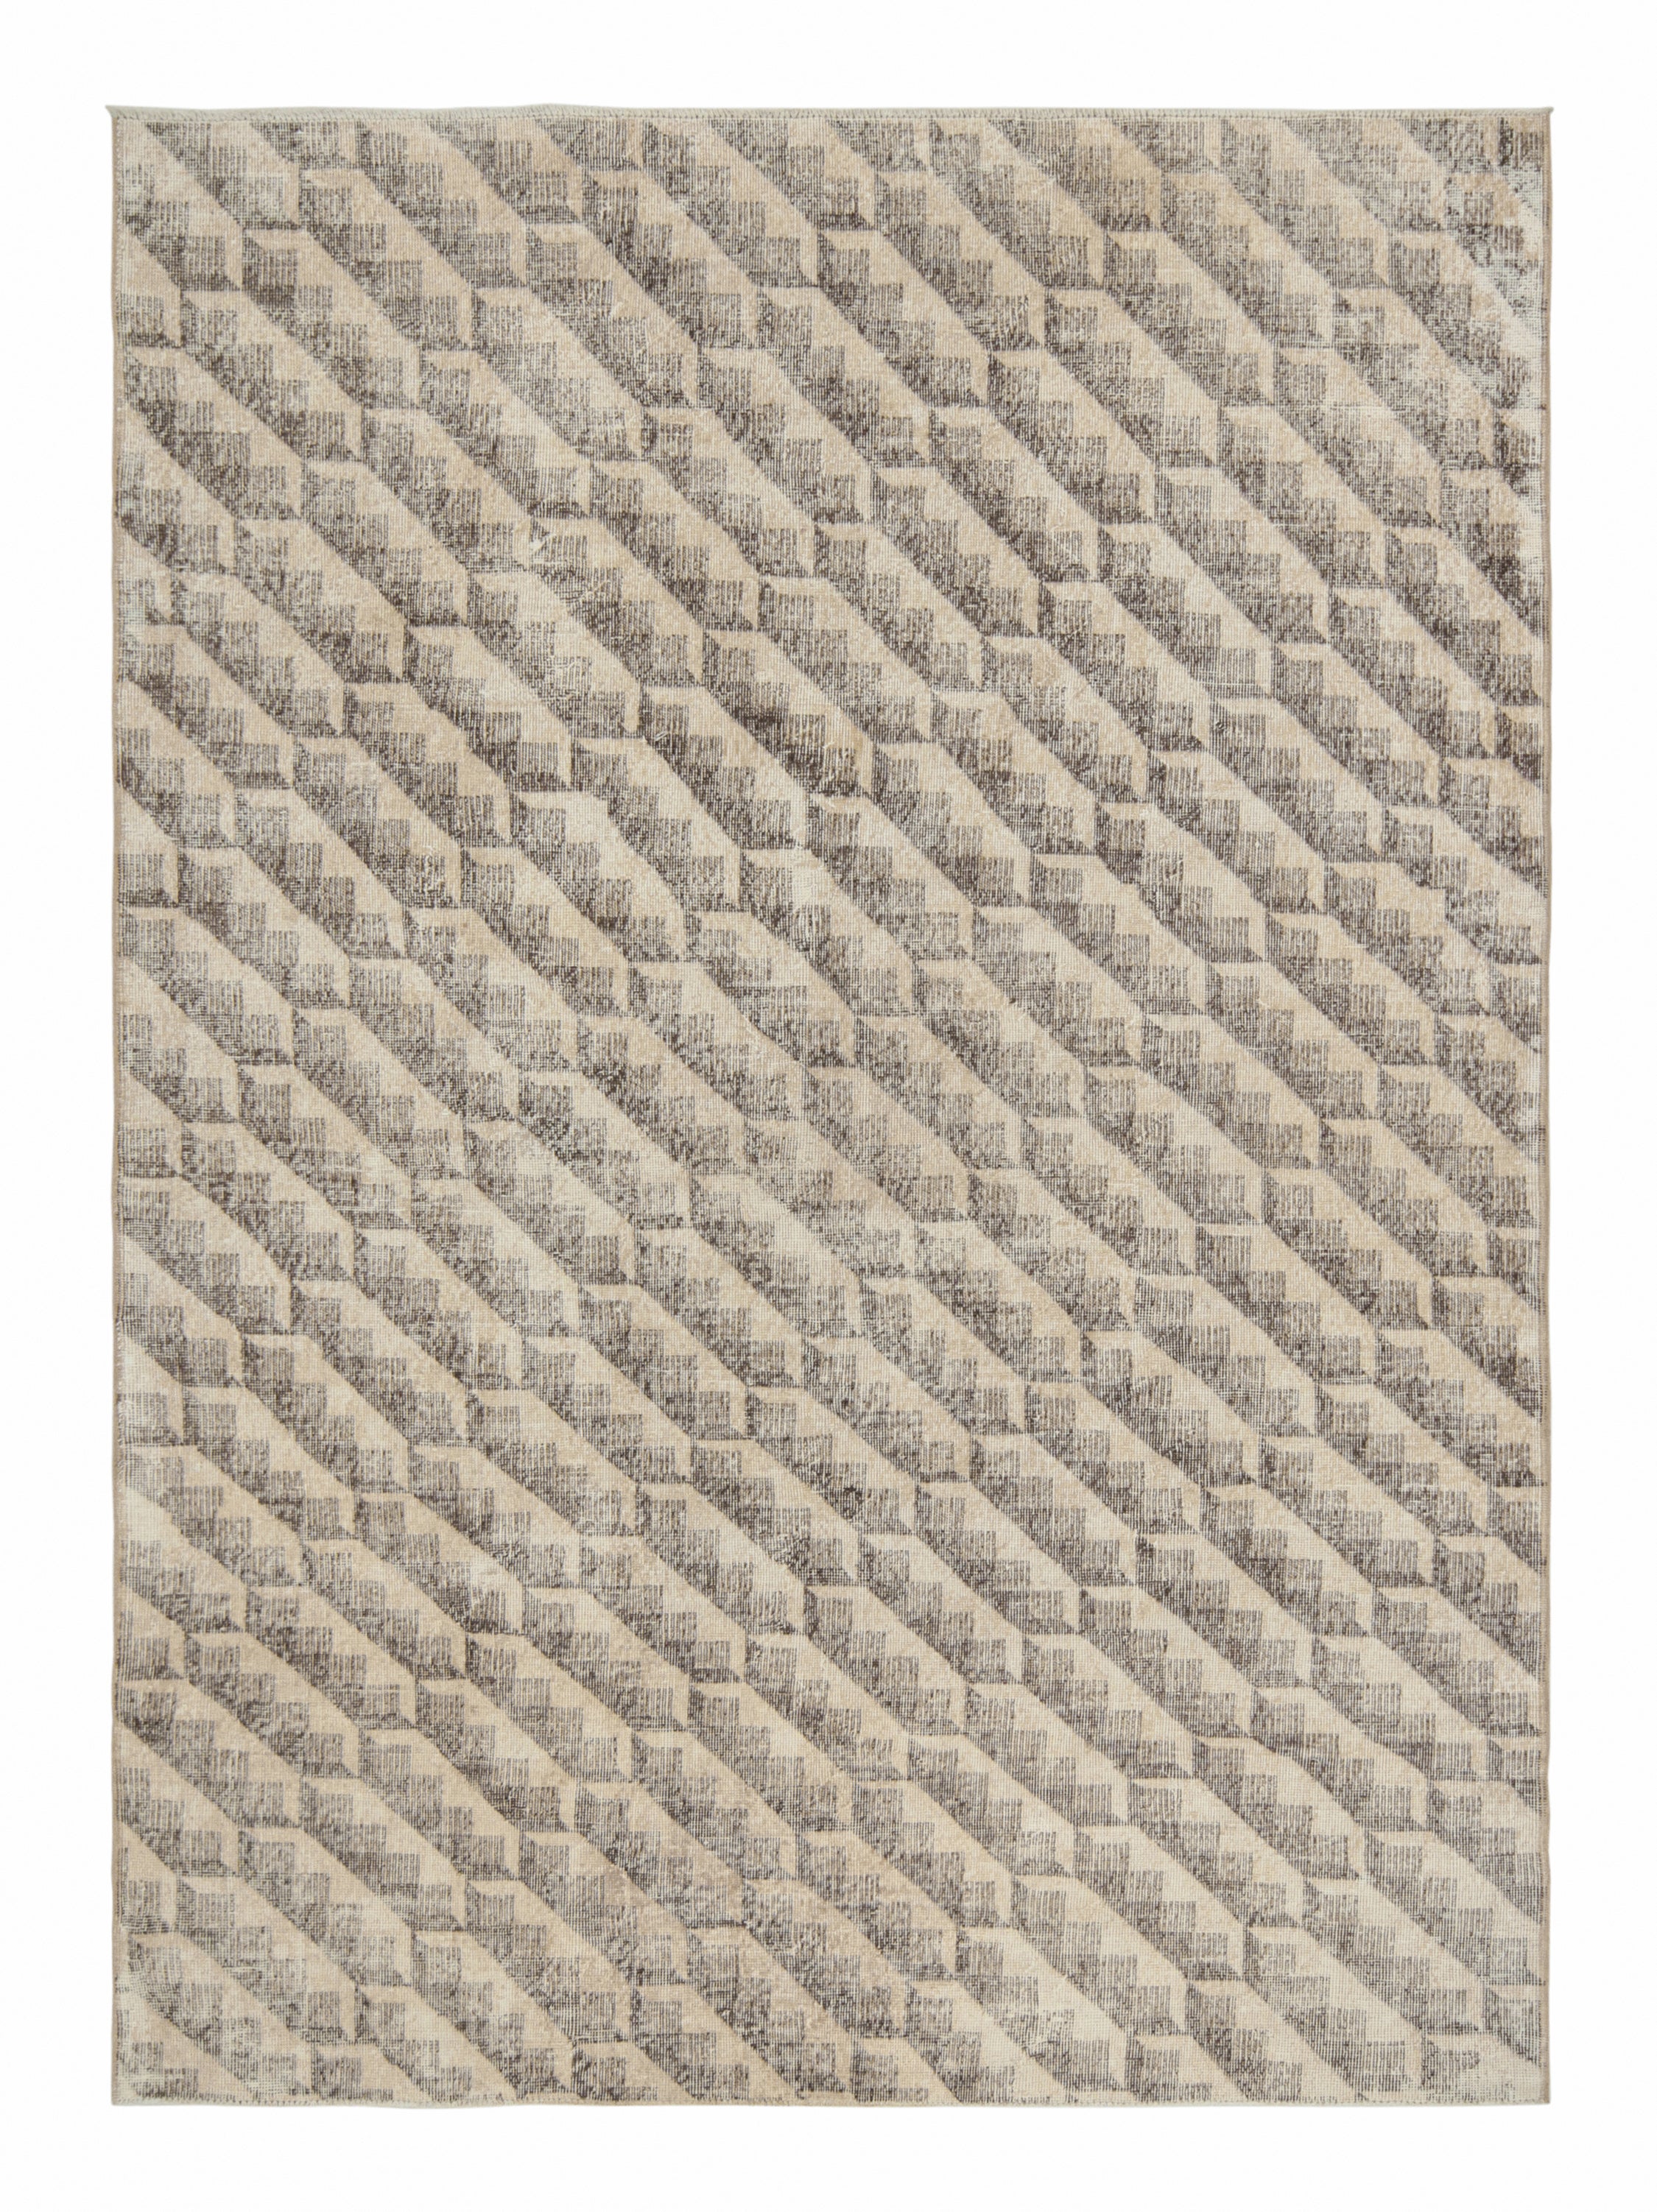 Vintage Zeki Müren rug in Beige and Brown Geometric Pattern, by Rug & Kilim For Sale